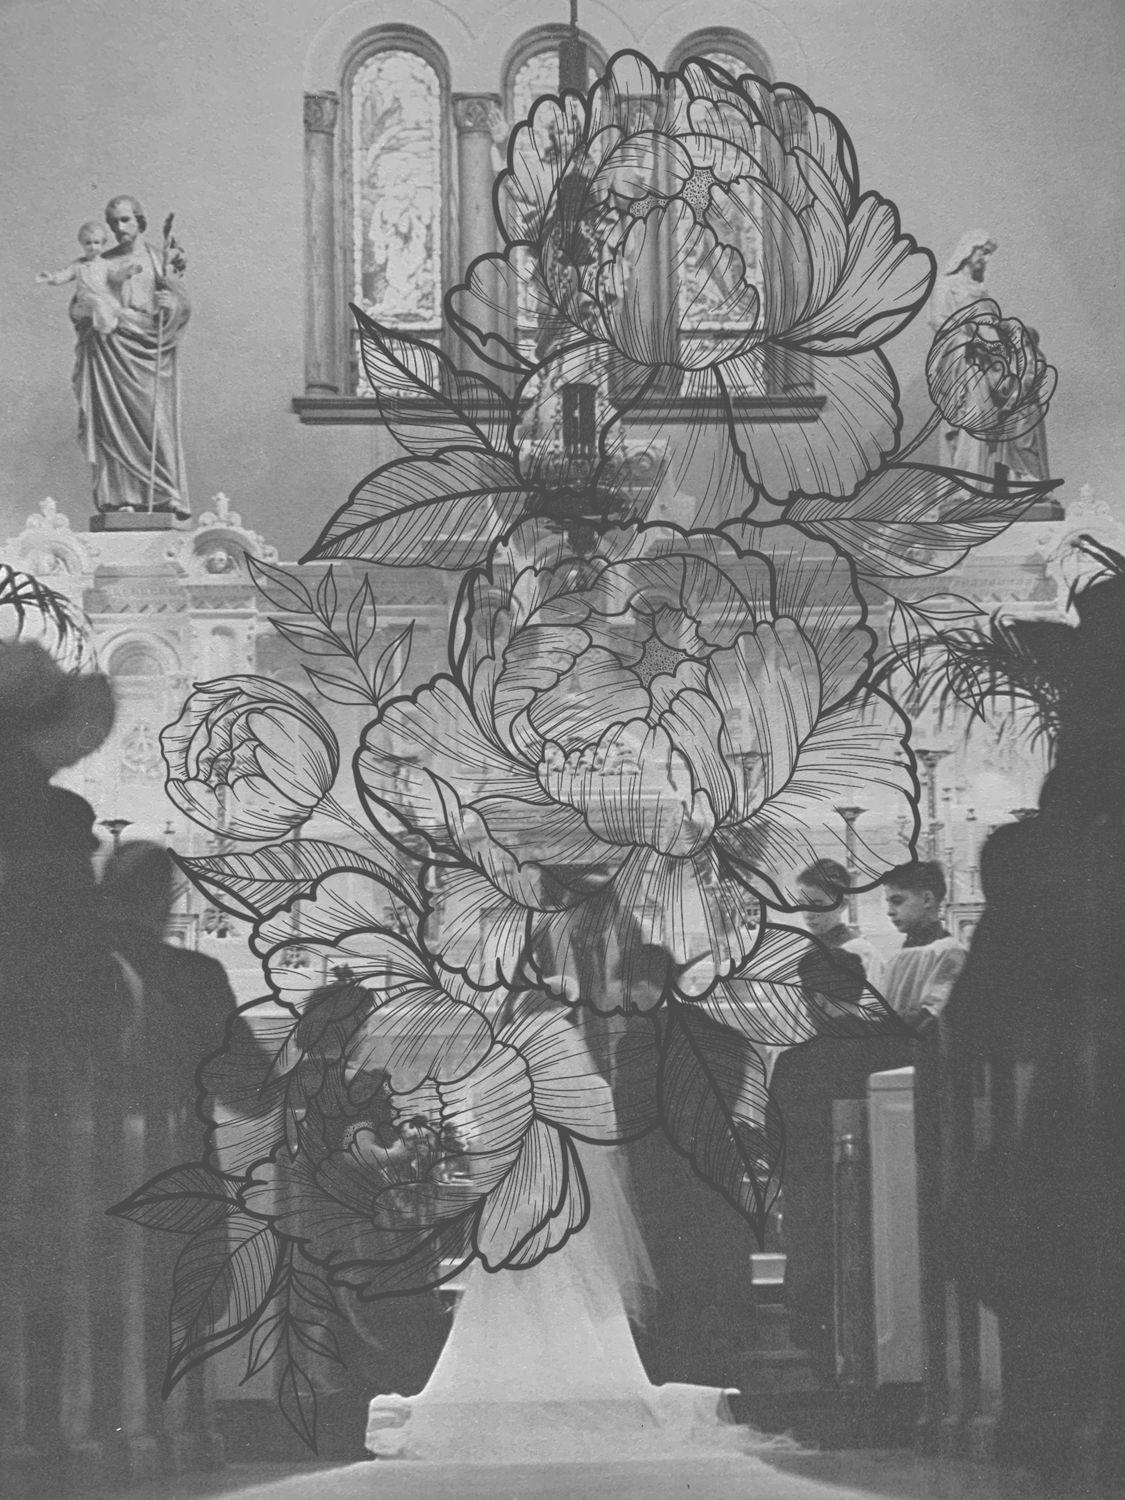 drawn flowers layered on greyscale church wedding scene 